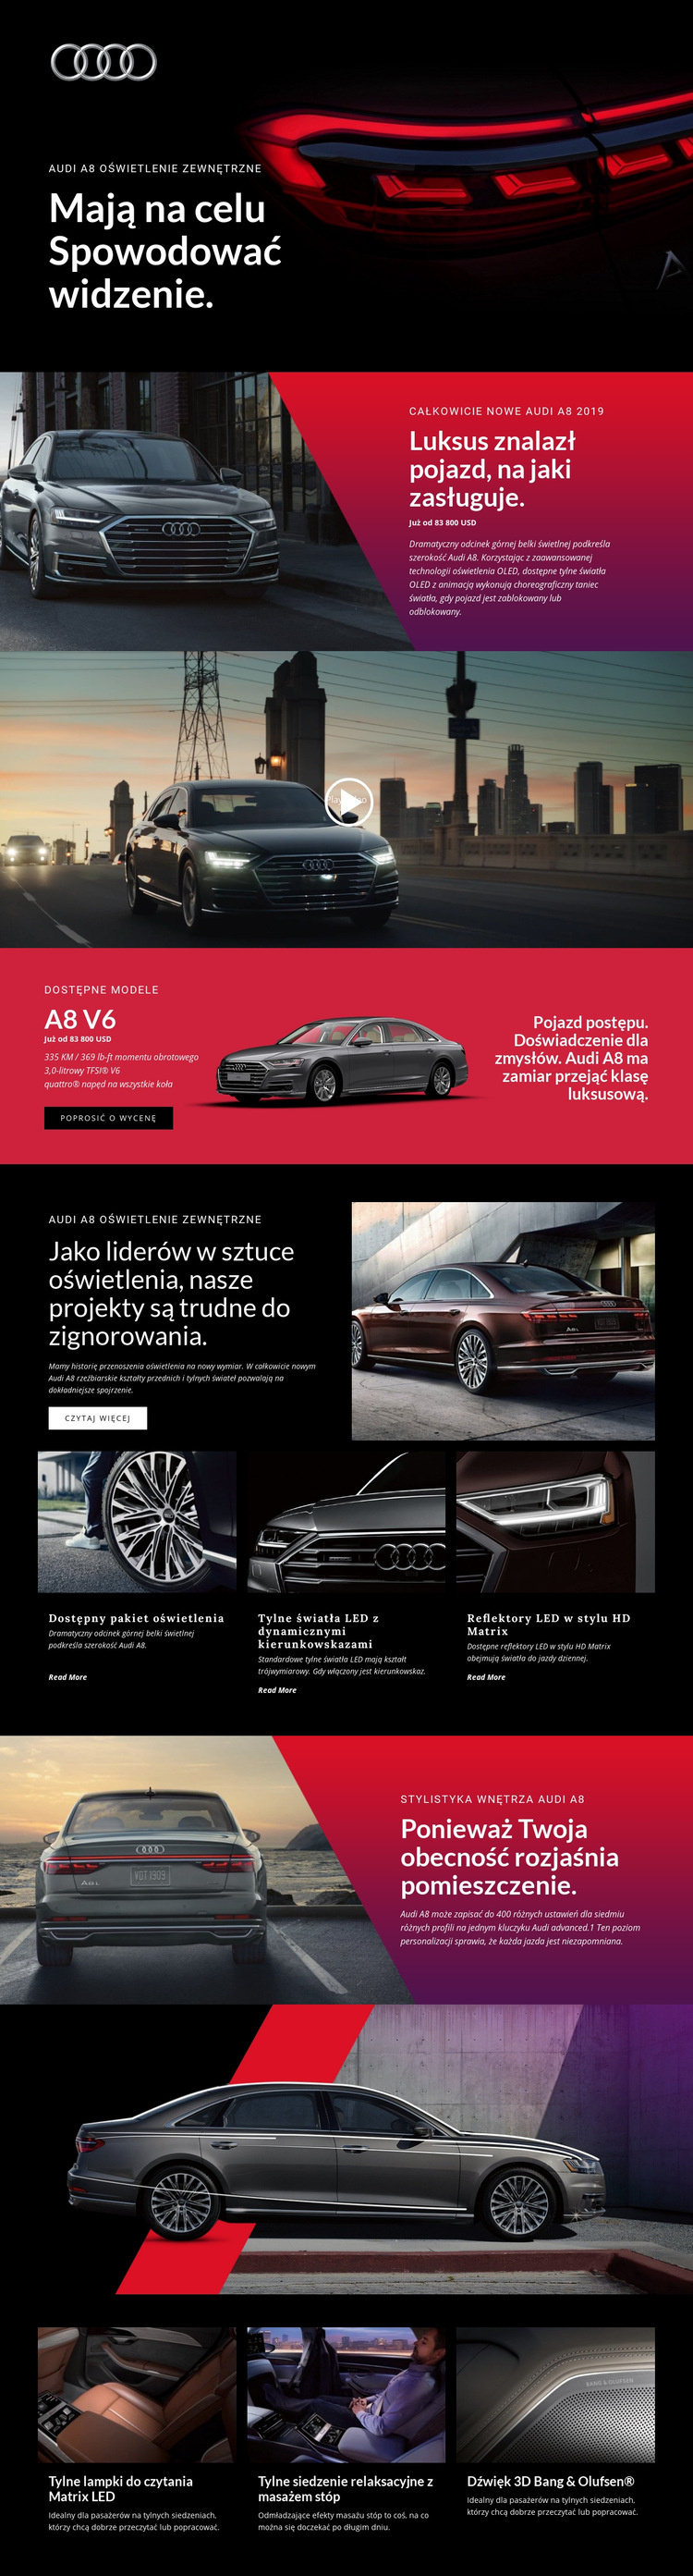 Luksusowe samochody Audi Szablon witryny sieci Web